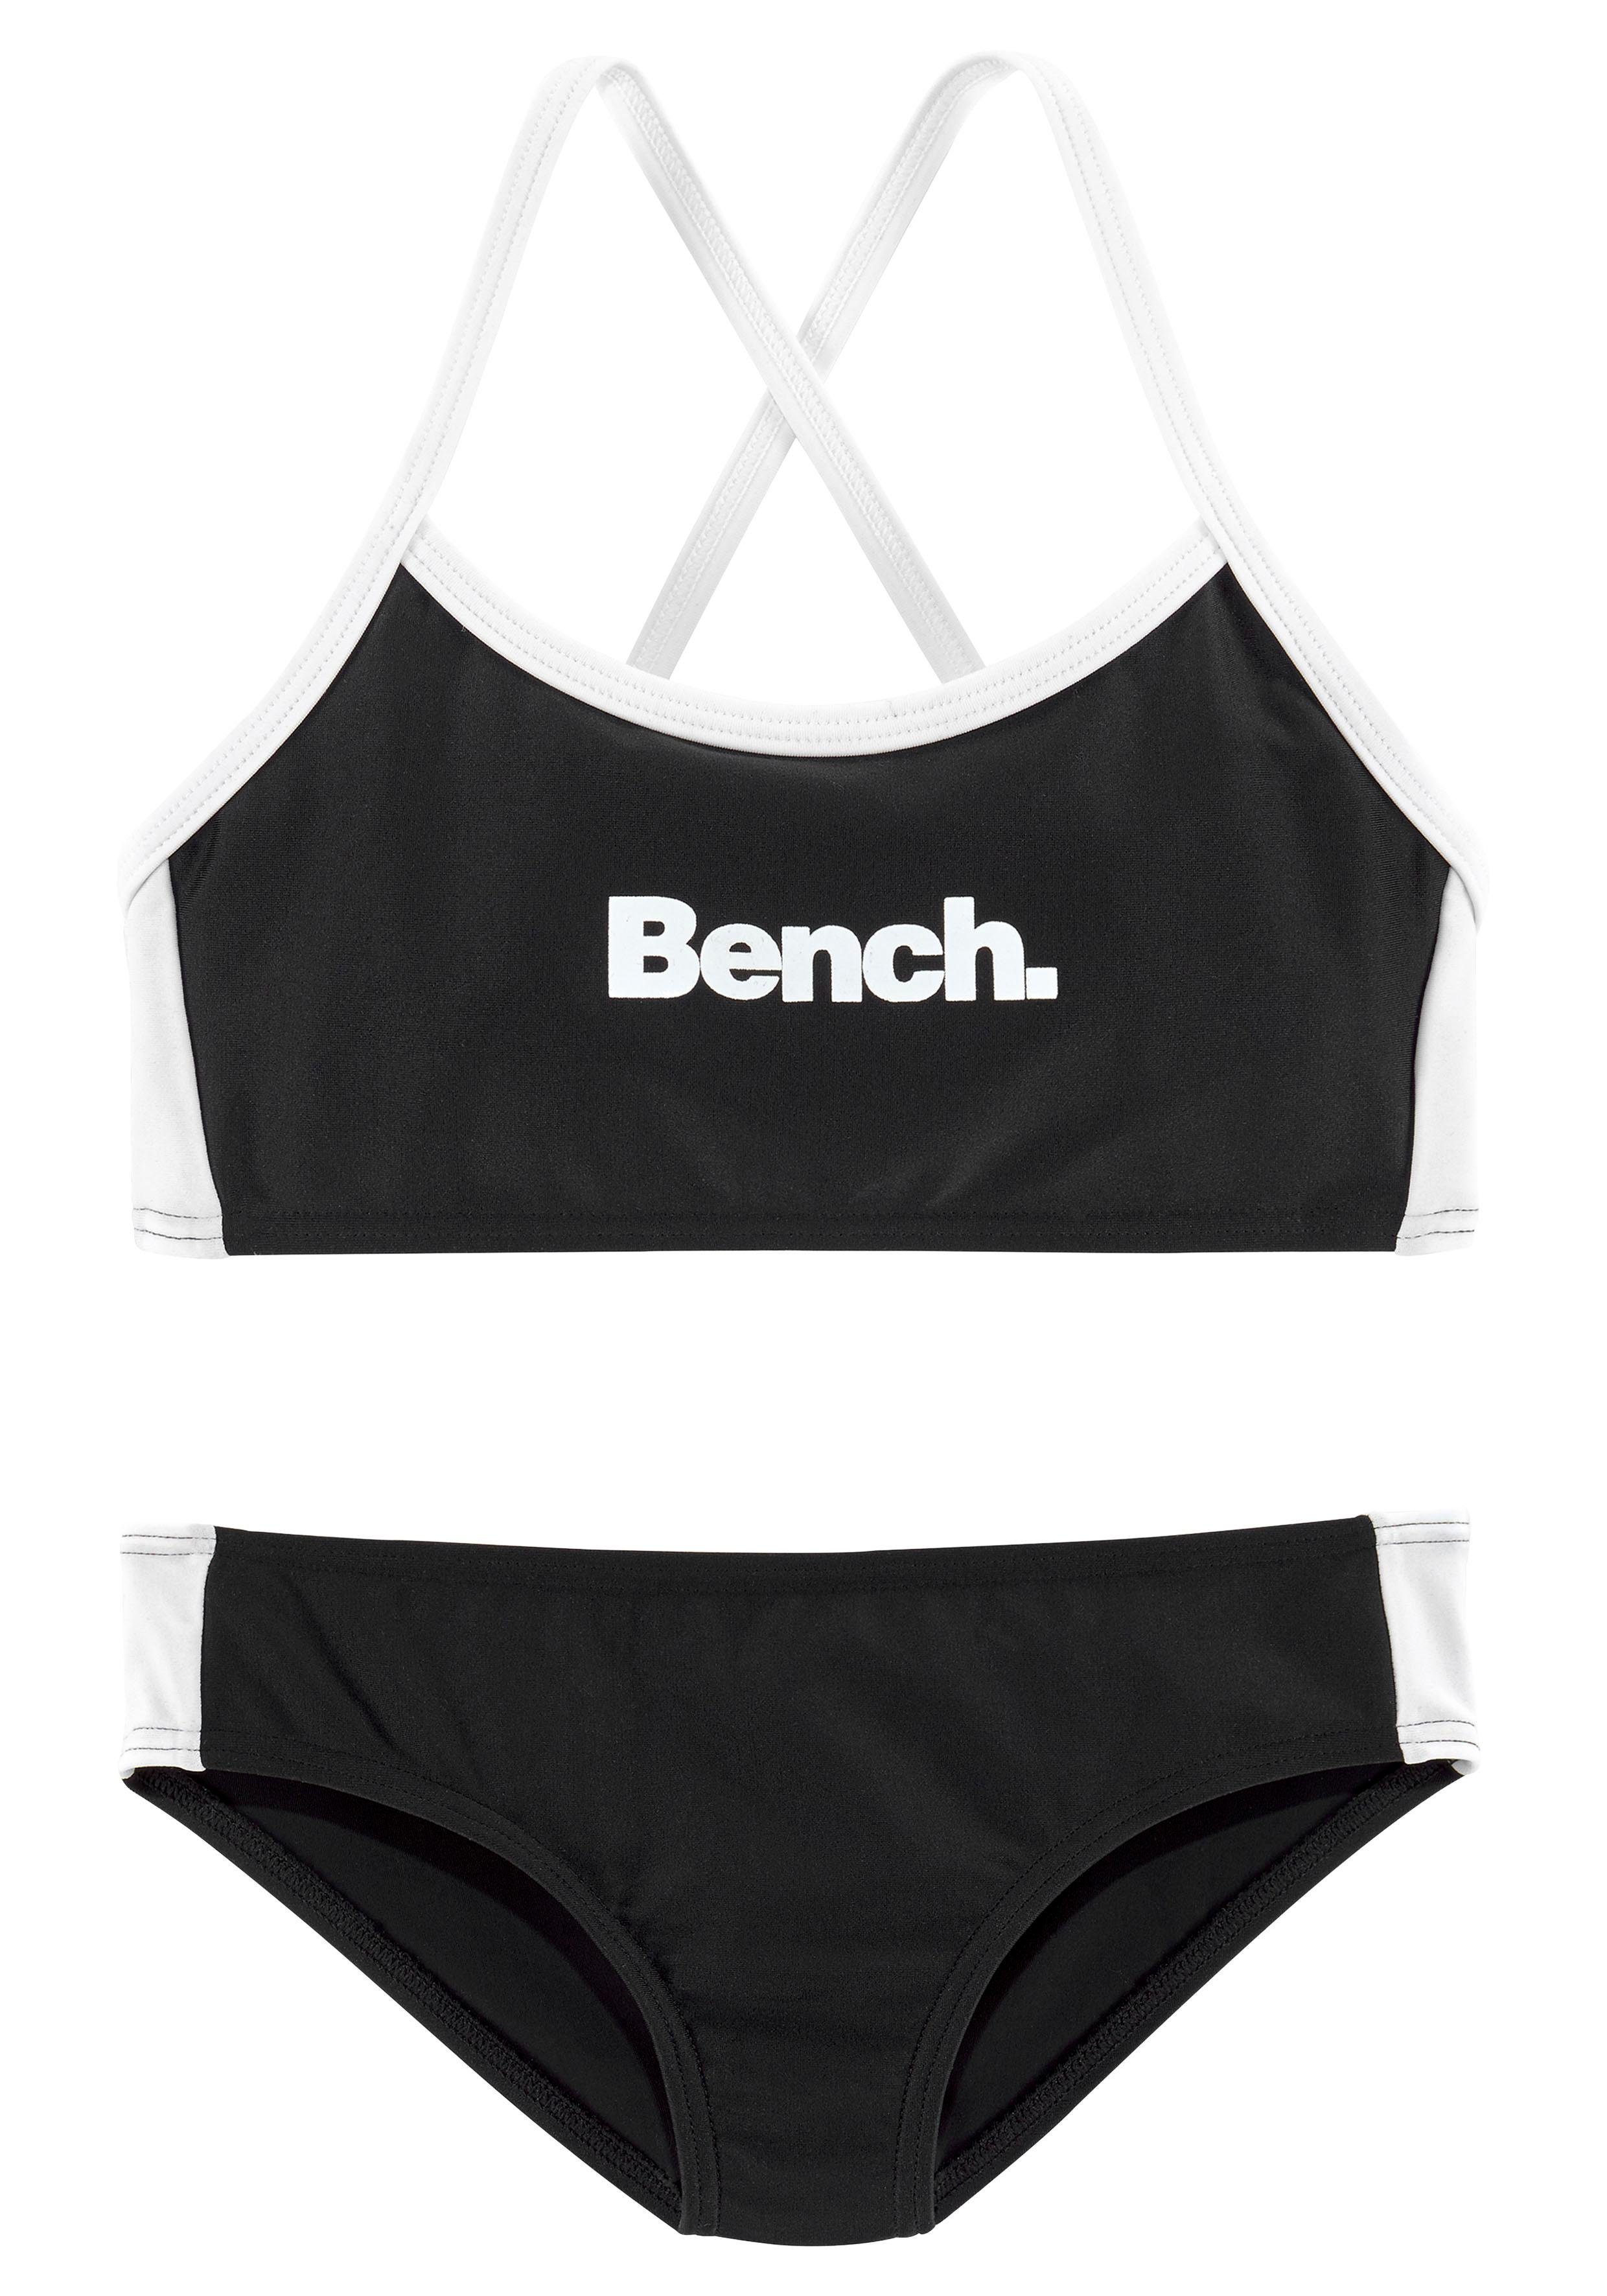 Bench. Bustier-Bikini mit schwarz-weiß Trägern gekreuzten